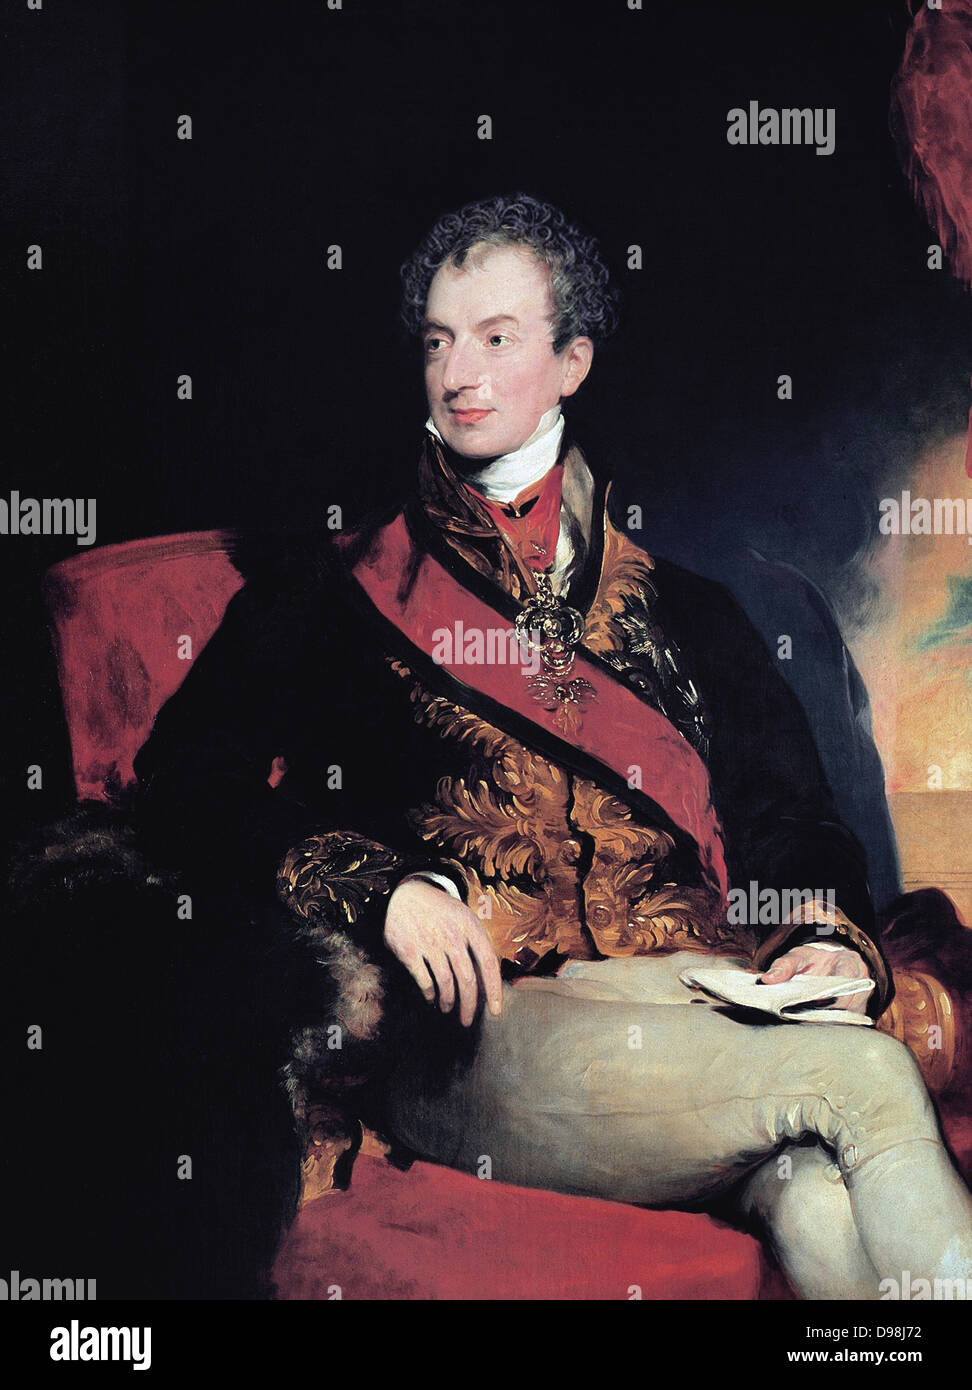 Il principe Klemens von Metternich 1773 - 1859. Tedesco-austriaco nato politico e statista. Ritratto del principe Metternich (c. 1825) da Sir Thomas Lawrence. Foto Stock